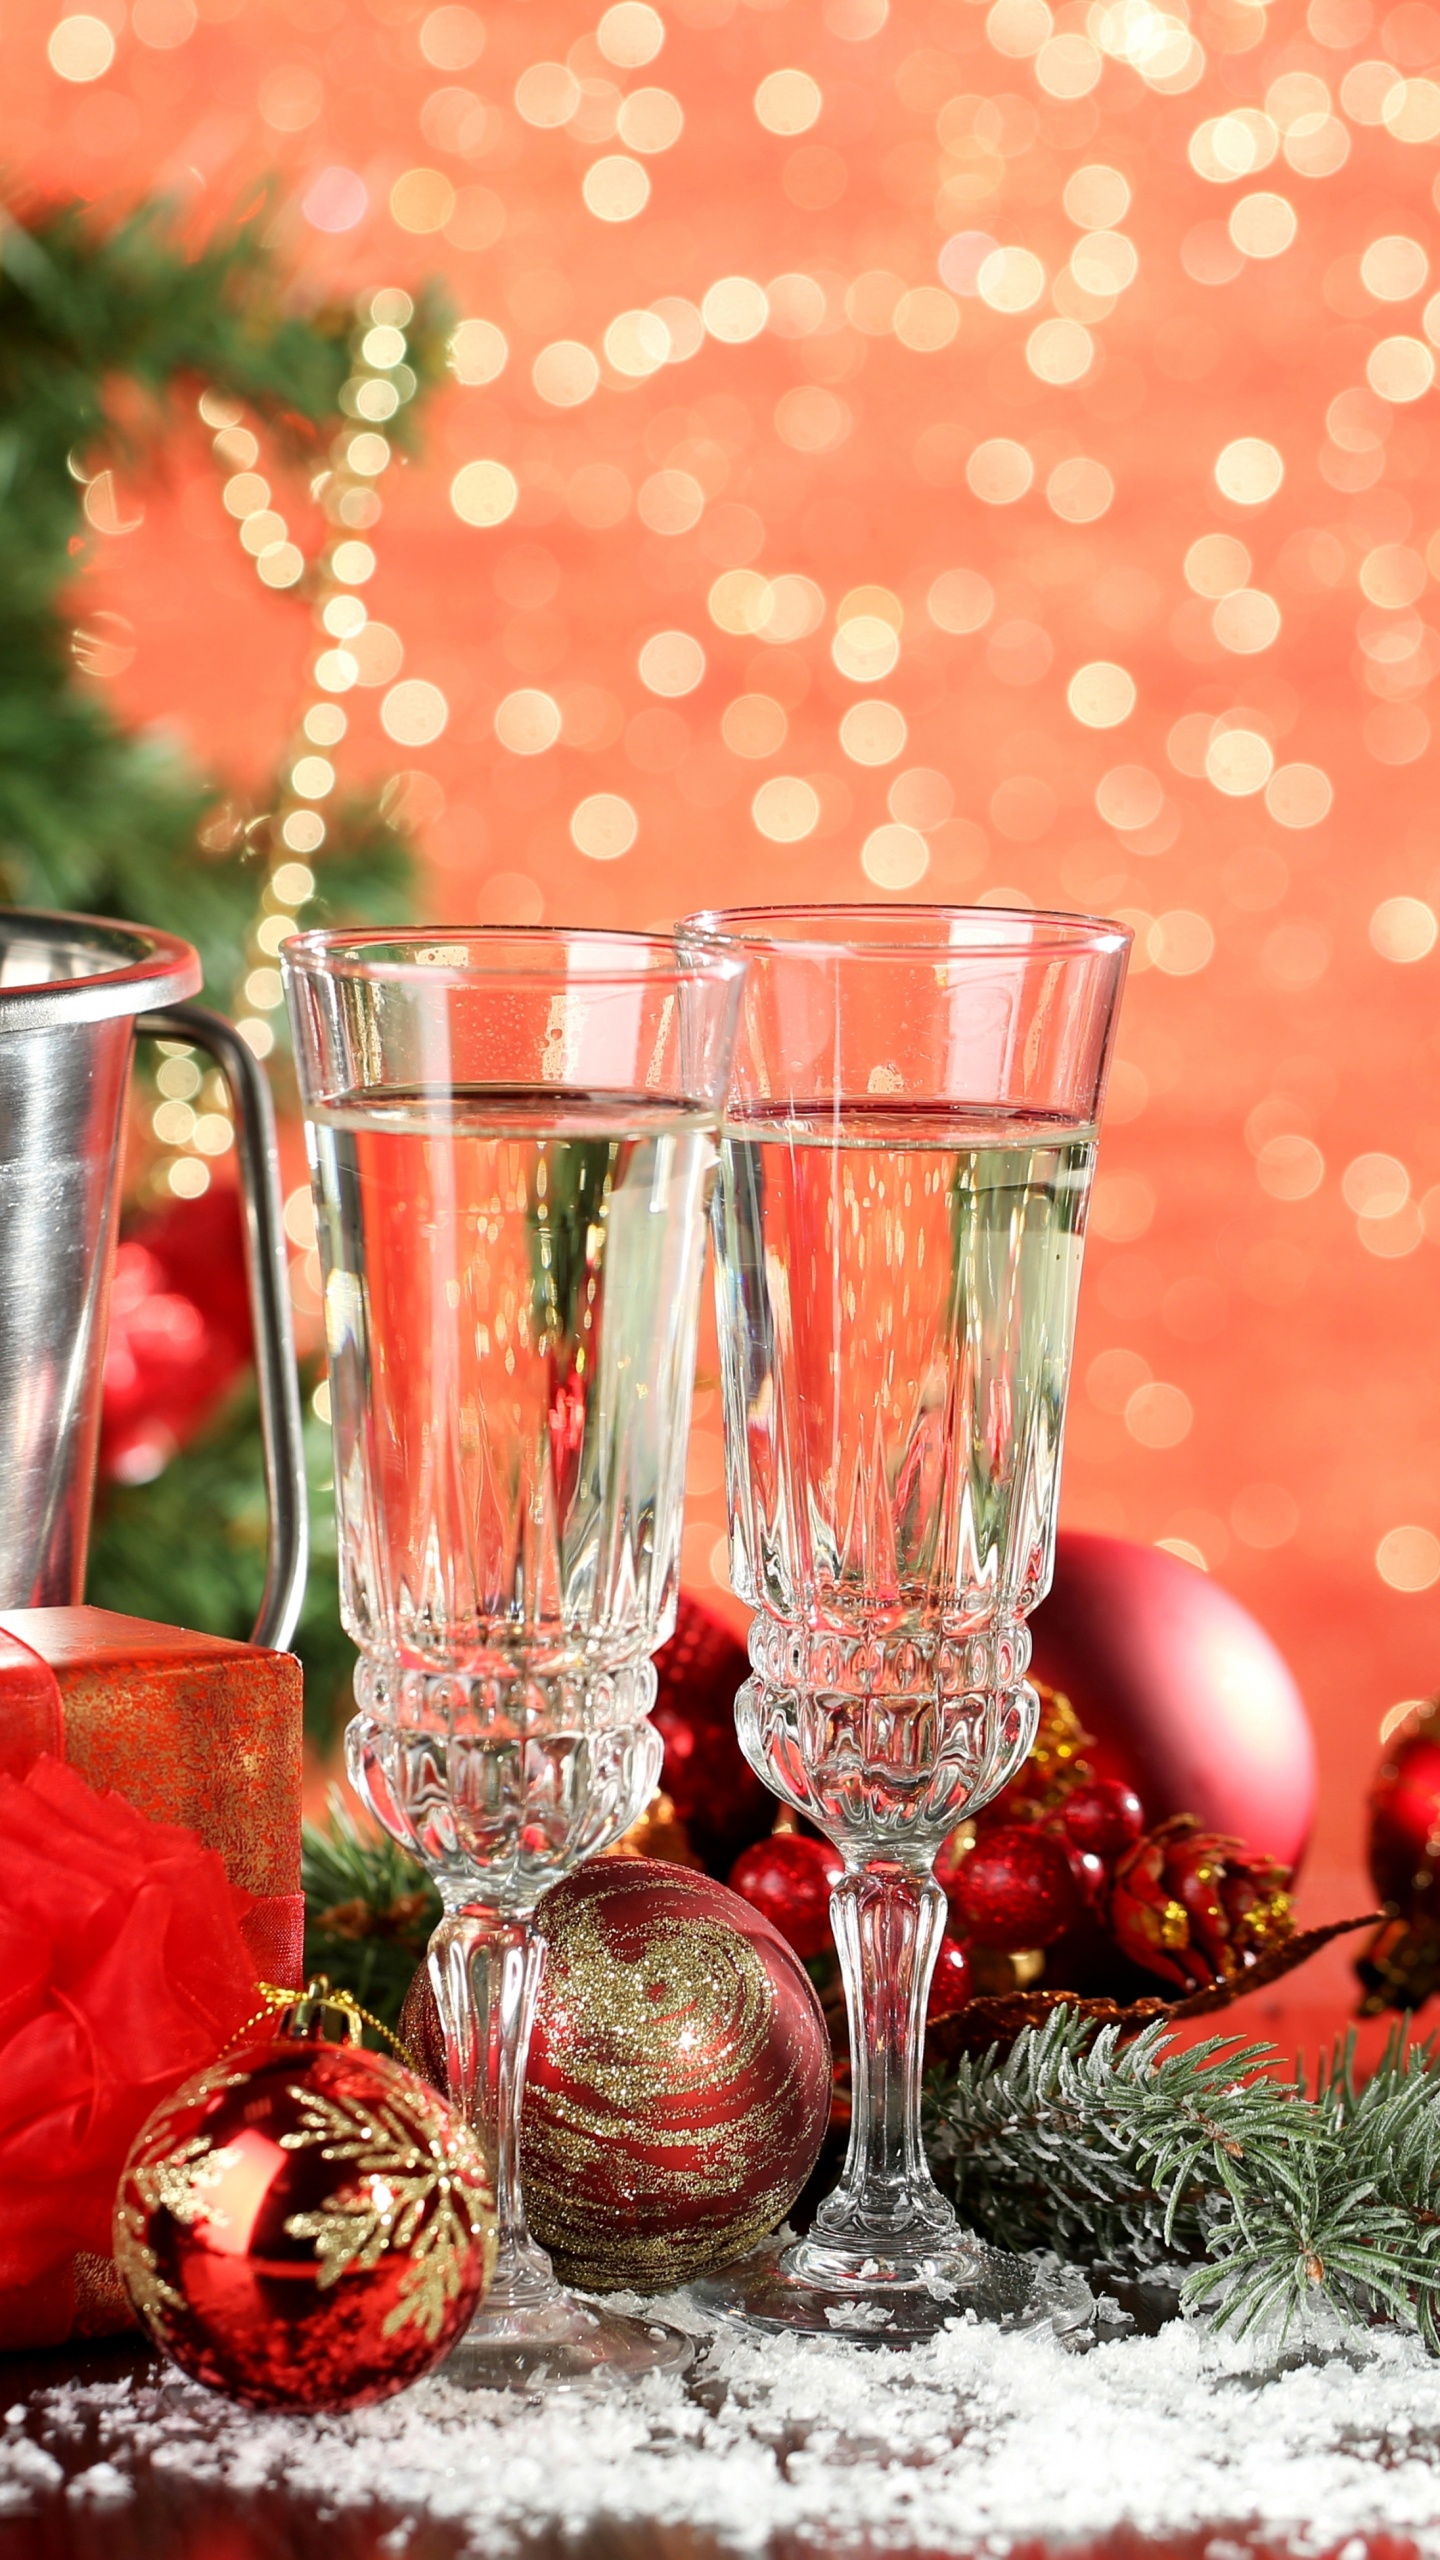 香槟, 新的一年, 圣诞节的装饰品, 圣诞装饰, 圣诞节 壁纸 1440x2560 允许